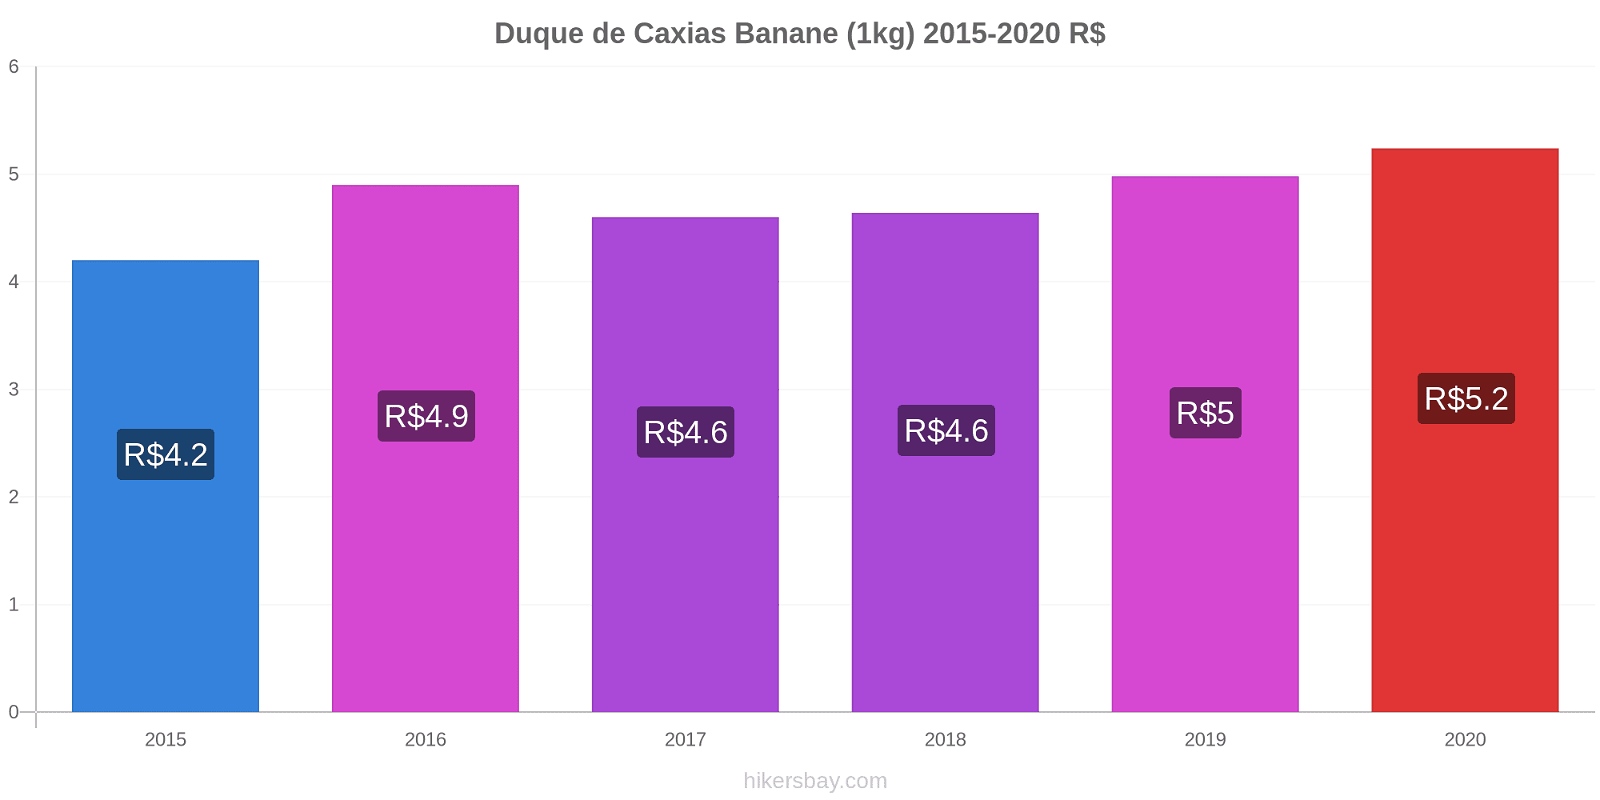 Duque de Caxias variazioni di prezzo Banana (1kg) hikersbay.com